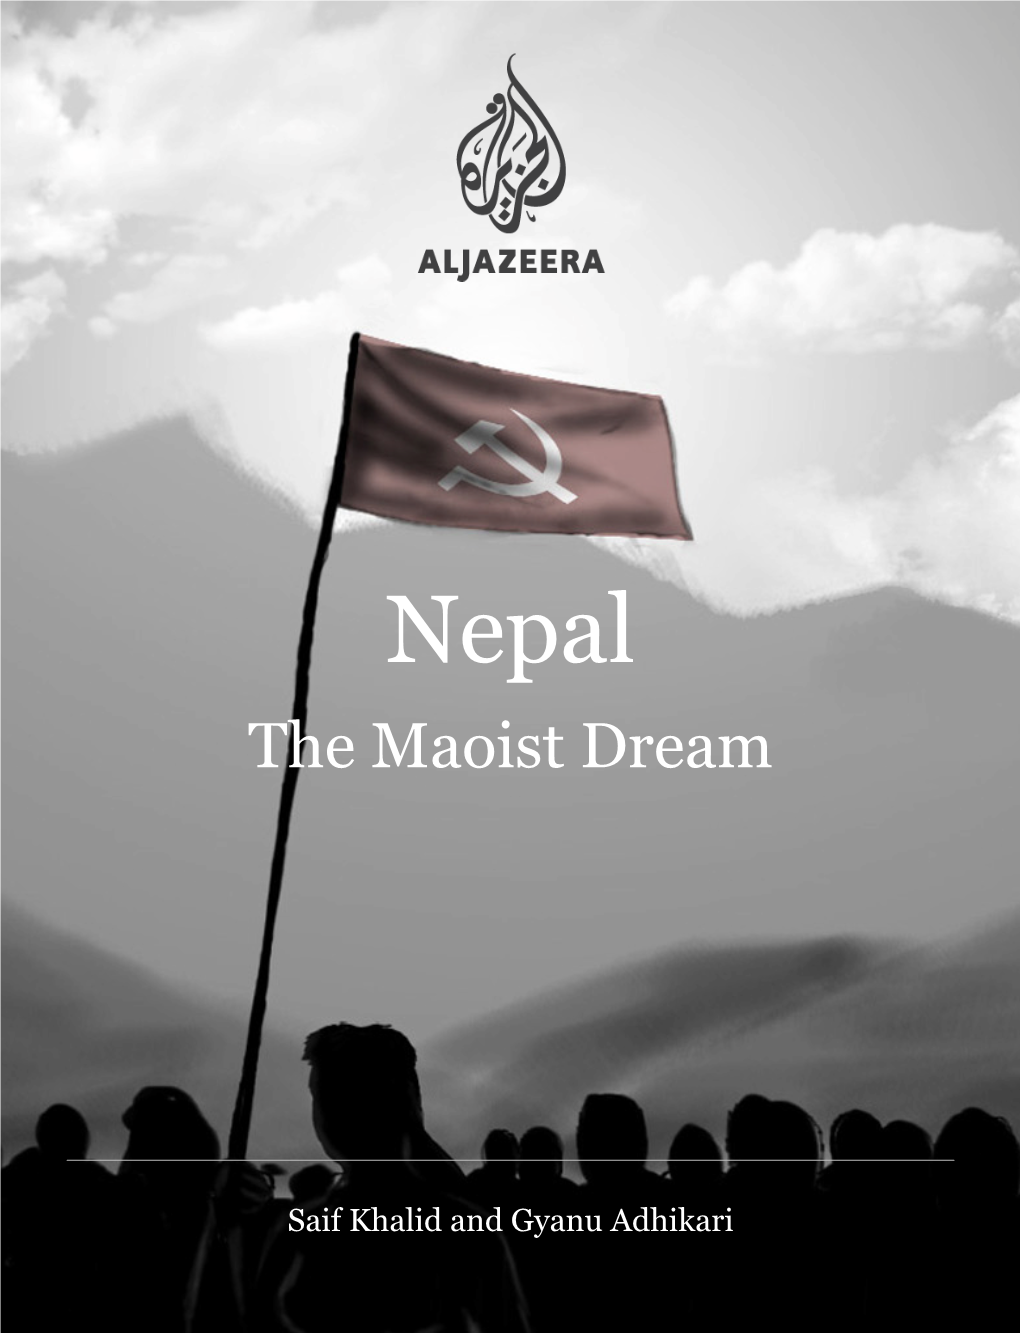 The Maoist Dream